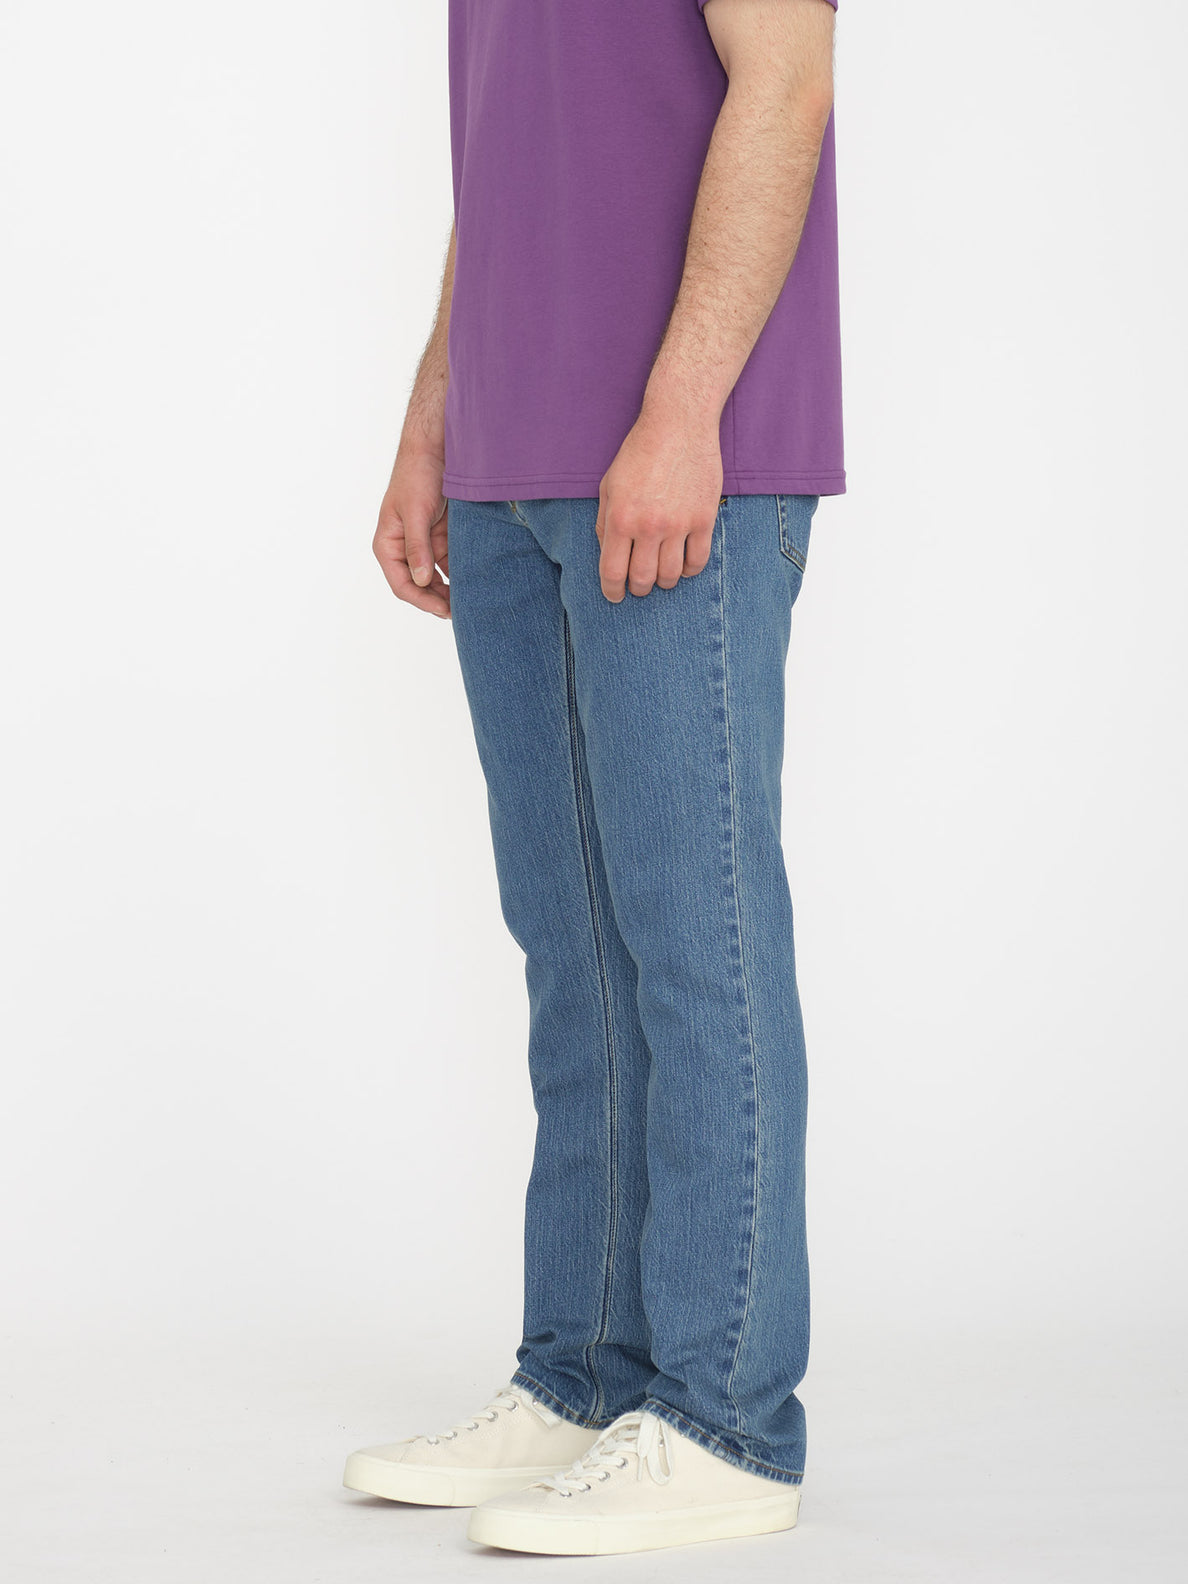 Vorta Slim Fit Jeans - Aged Indigo